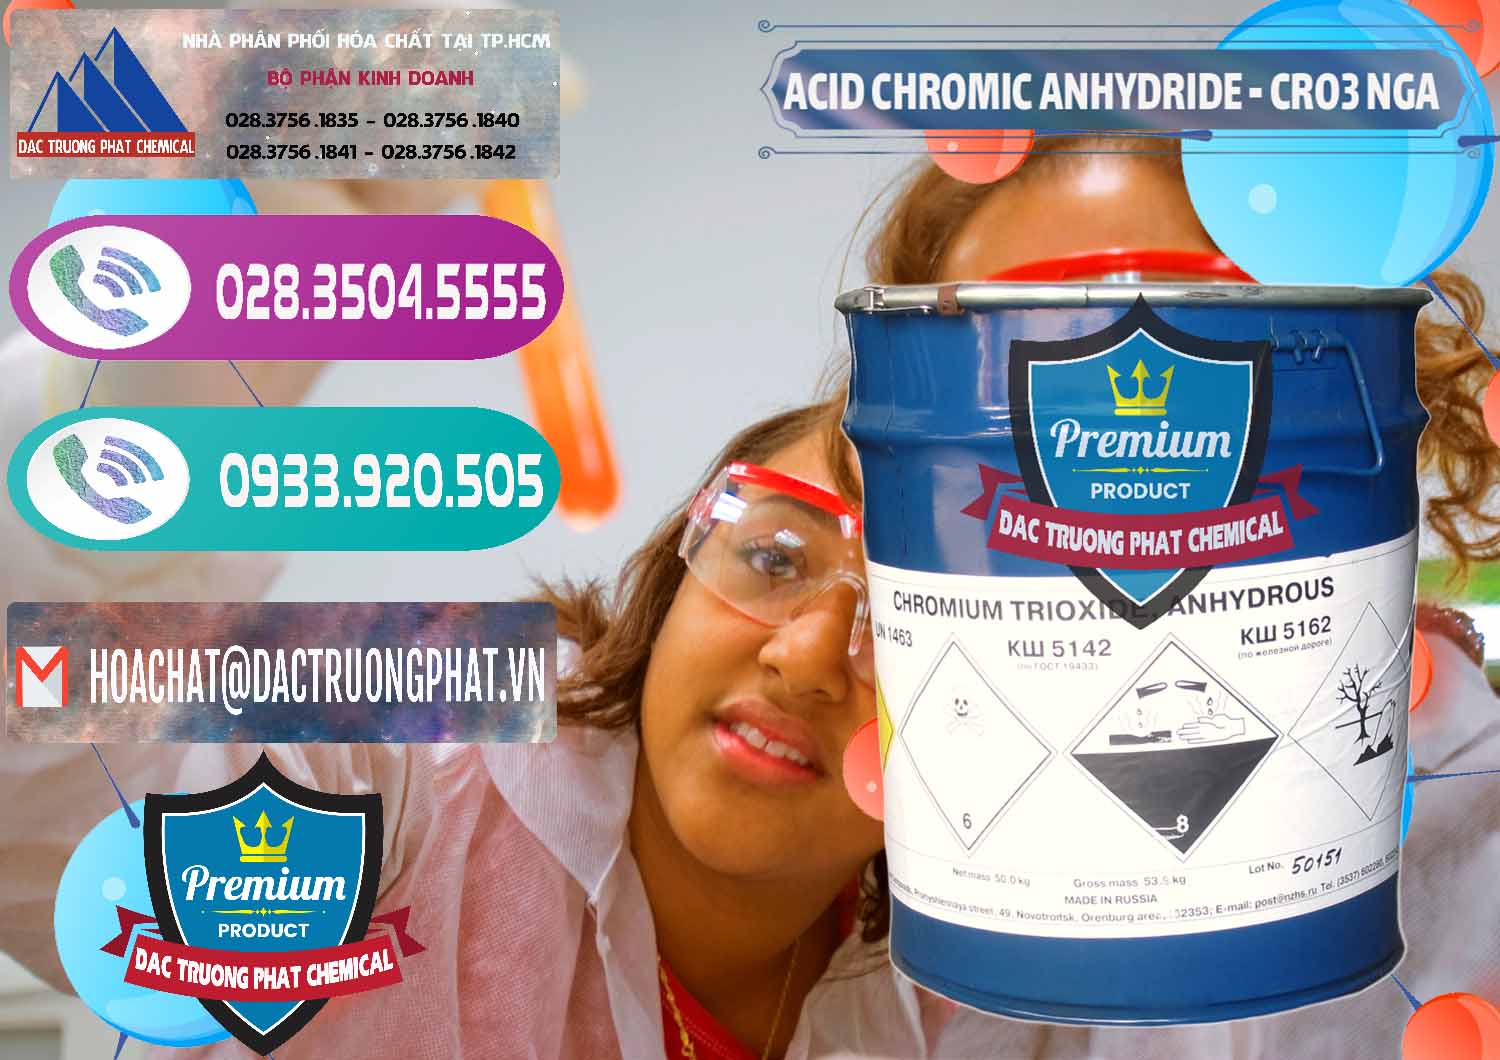 Cty chuyên phân phối _ bán Acid Chromic Anhydride - Cromic CRO3 Nga Russia - 0006 - Cty chuyên cung cấp _ bán hóa chất tại TP.HCM - hoachatxulynuoc.com